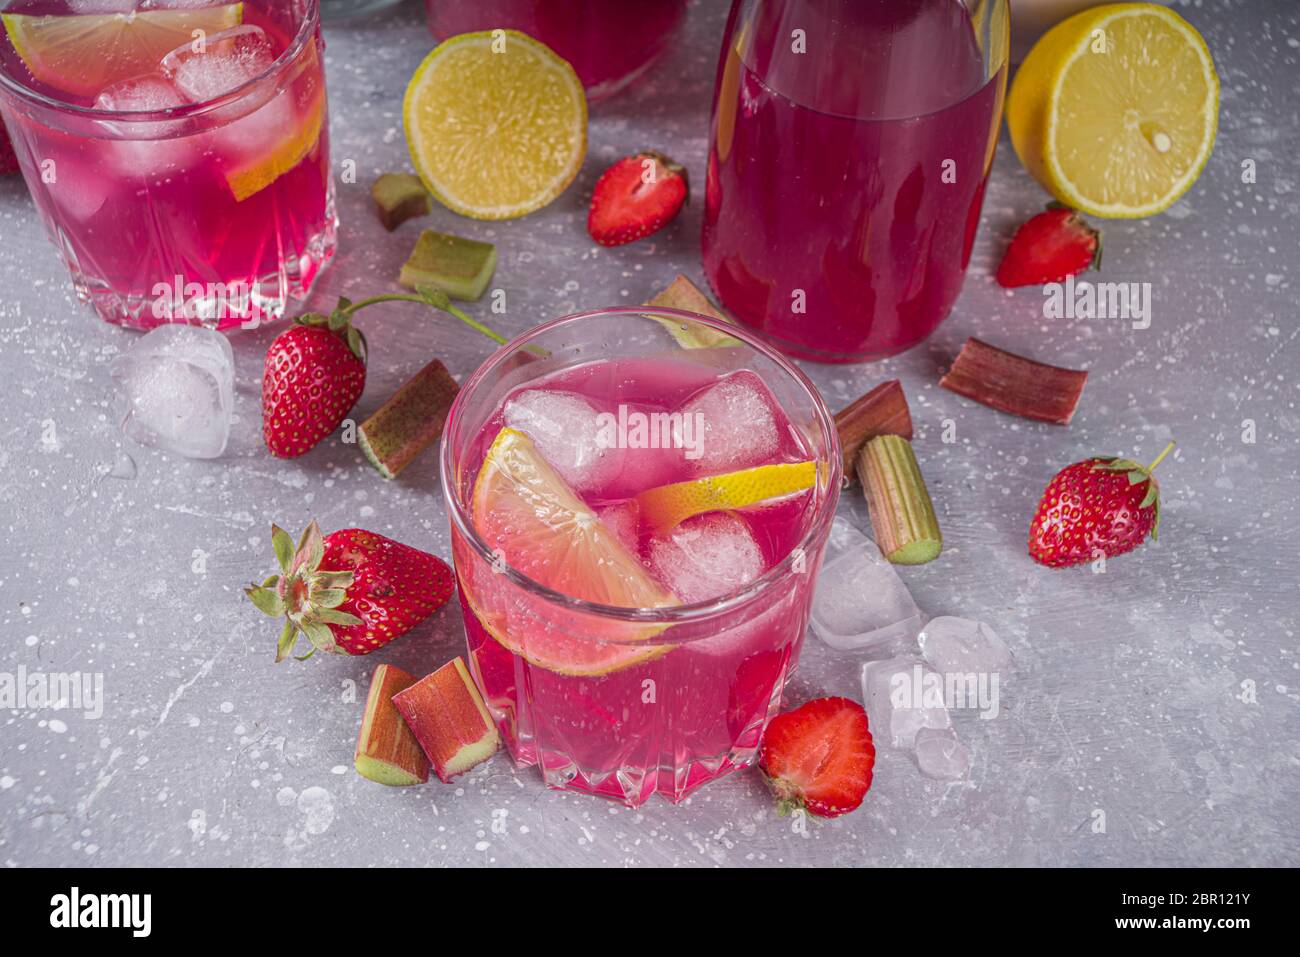 Rhubarbe maison et cocktail d'alcool aux fraises. Liqueur ou gin de rhubarbe,  sur fond gris avec rhubarbe fraîche, fraises, citron, menthe Photo Stock -  Alamy